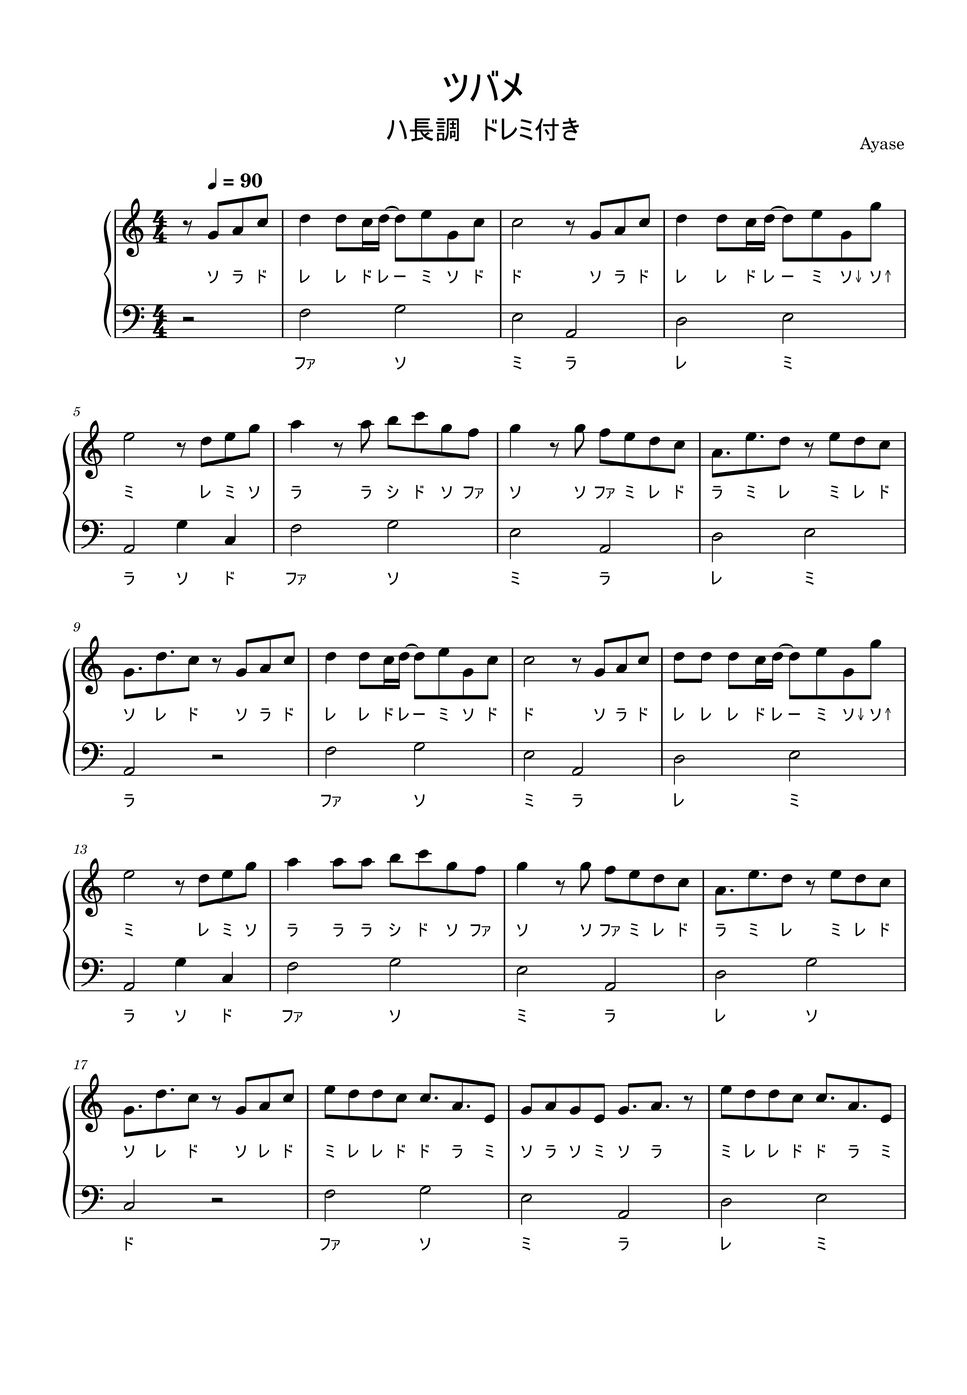 ツバメ (ハ長調ドレミ付きの簡単楽譜です) by ピアノ塾